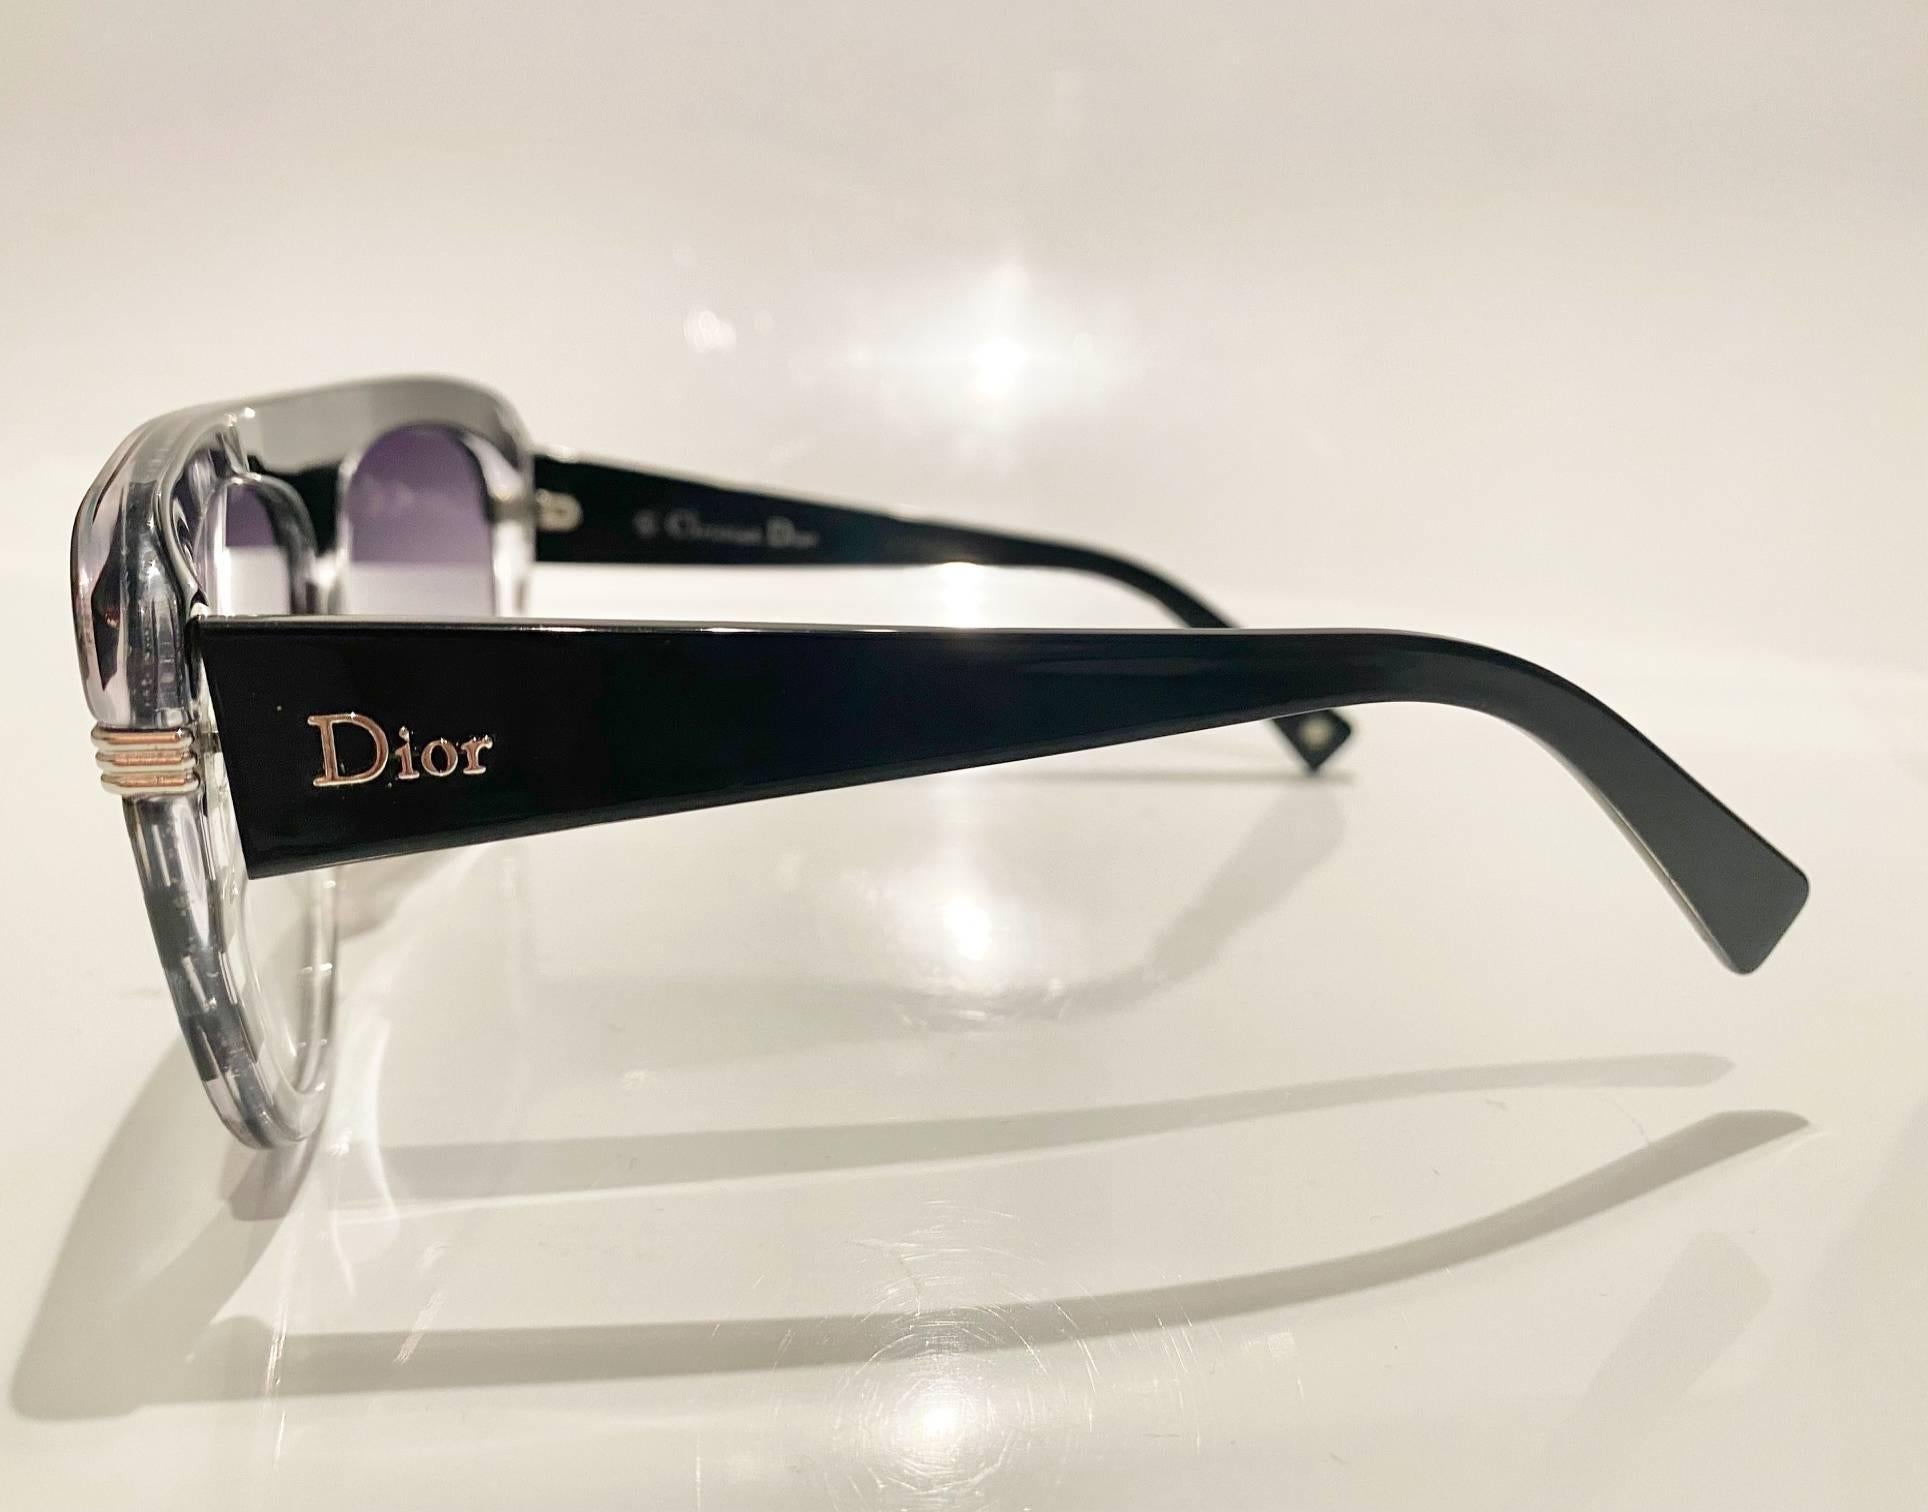 Lunettes de soleil Christian Dior Stripe Cat-Eye des années 2000, motif rayures bleu foncé Fabriquées en acétate de haute qualité, ces lunettes de soleil sont conçues pour être à la fois élégantes et durables.

Condition : Années 2000, vintage,